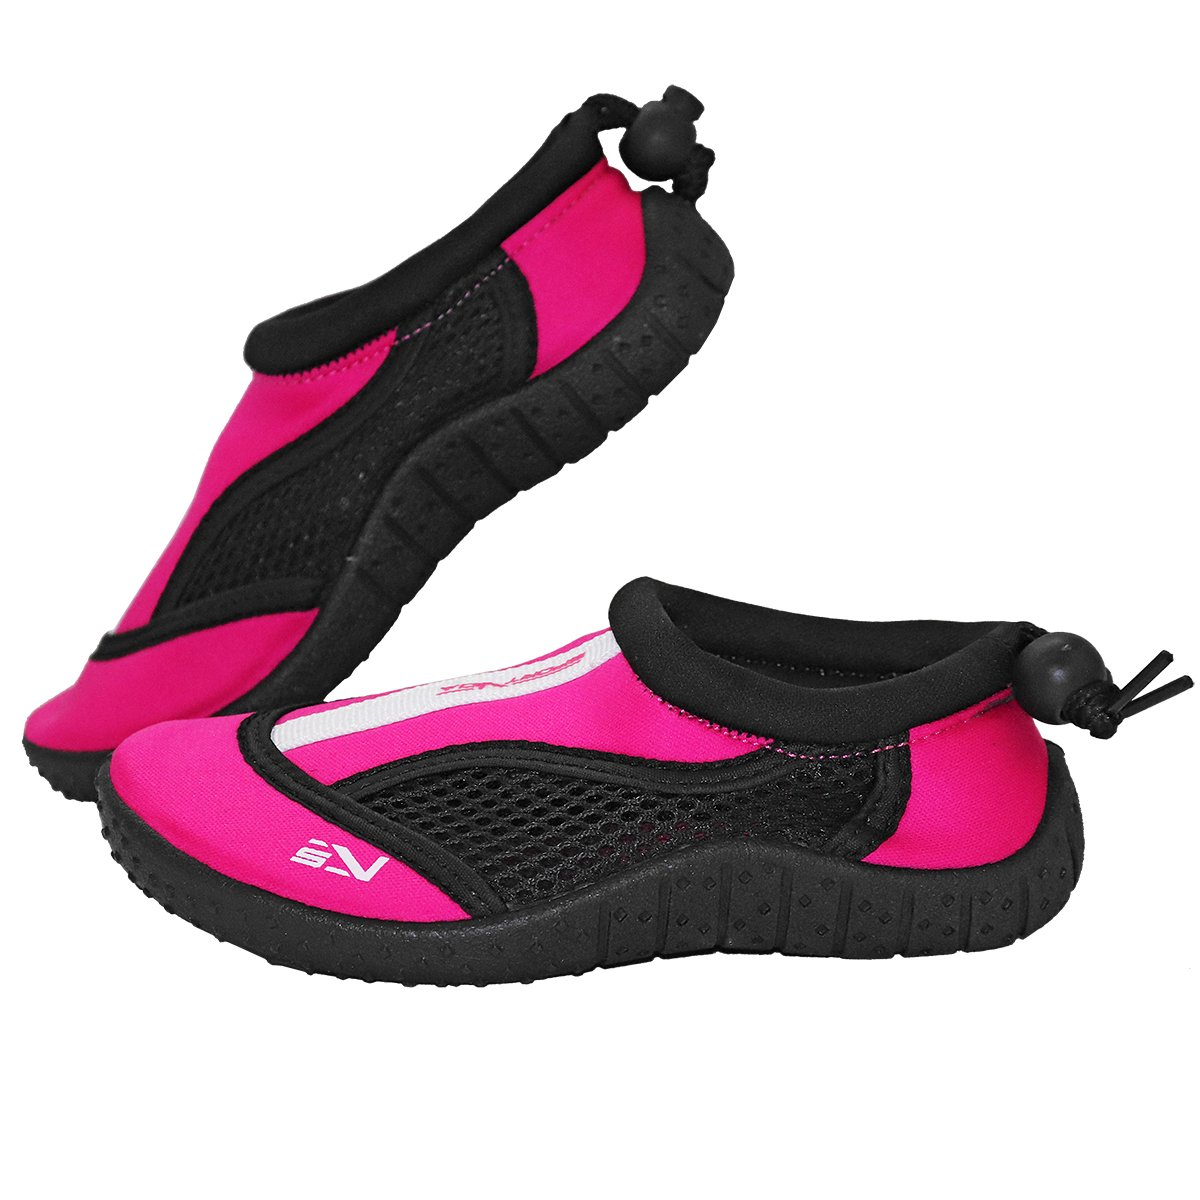 Обувь для пляжа и кораллов (аквашузы) SportVida SV-GY0001-R33 Size 33 Black/Pink